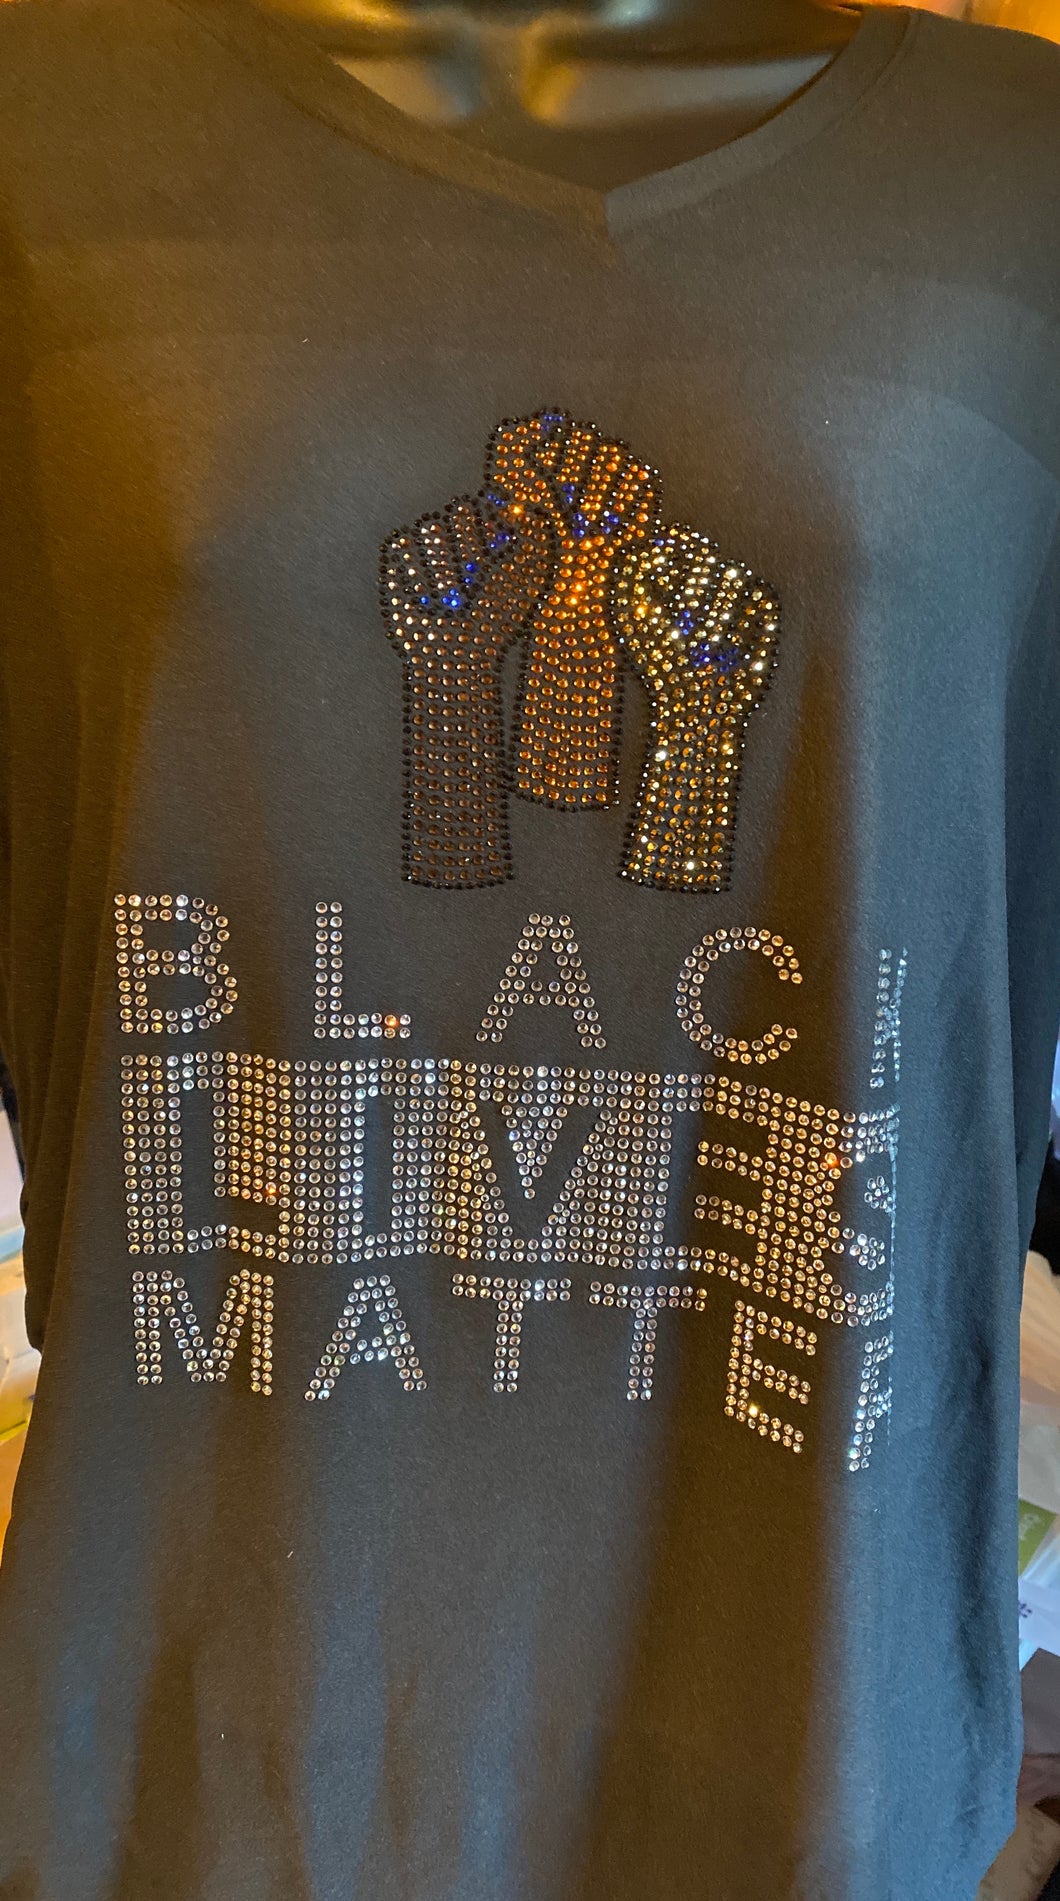 Black Lives Matter bling